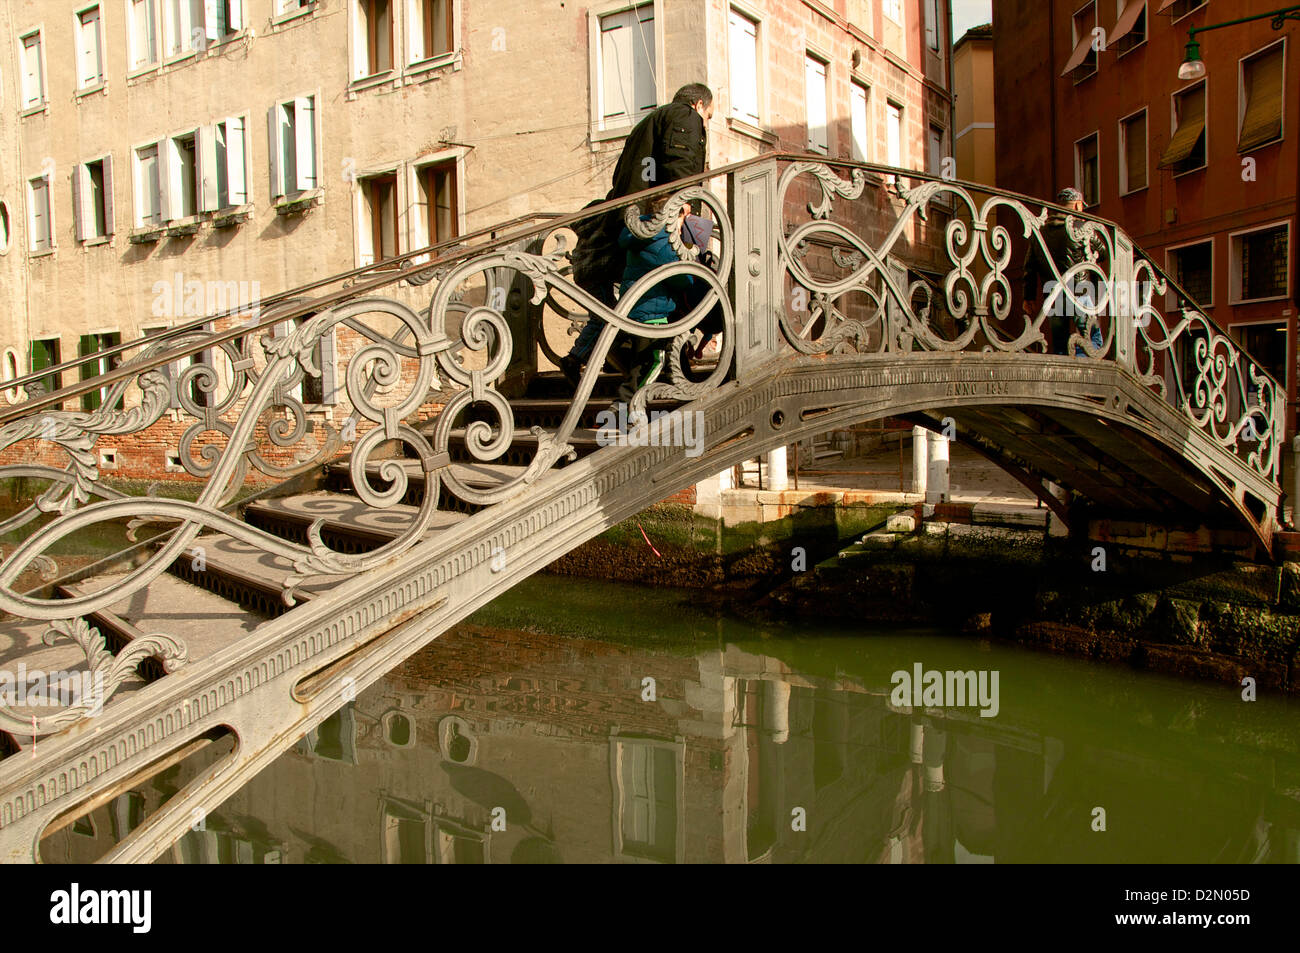 Puente de metal excepcional a lo largo de un canal con reflejos de agua y peatonal, Venecia, Véneto, Italia Foto de stock